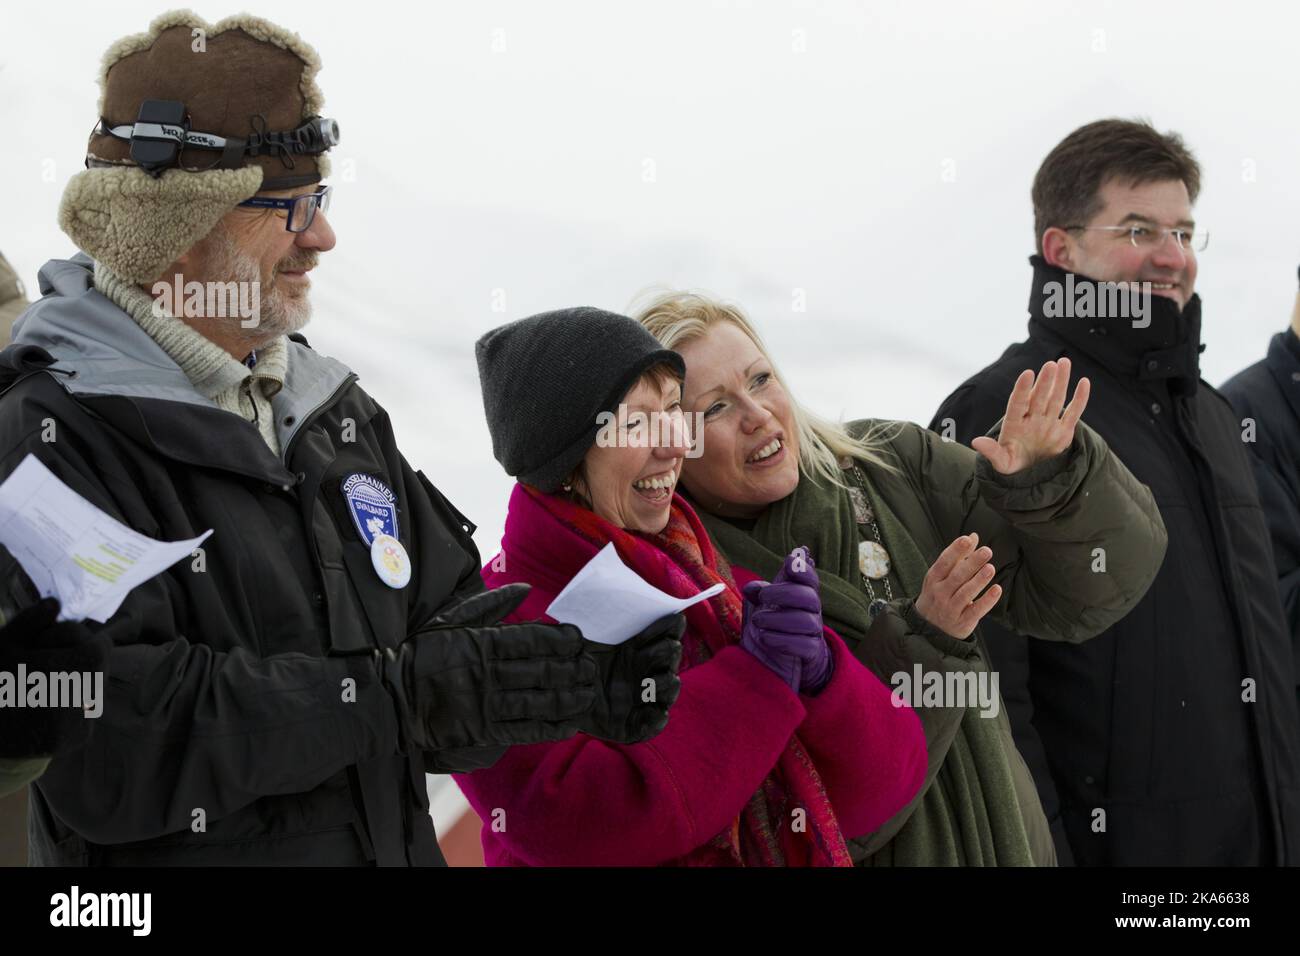 Svalbard 20120308. Da destra: Il leader locale Christin Kristoffersen, l'Alto rappresentante dell'Unione per gli affari esteri e la politica di sicurezza Catherine Ashton e il governatore di Svalbard Odd Olsen Ingeroe alla celebrazione del 'giorno del Sole' a Longyearbyen, Svalbard. Foto: Berit Roald / NTB scanpix Foto Stock